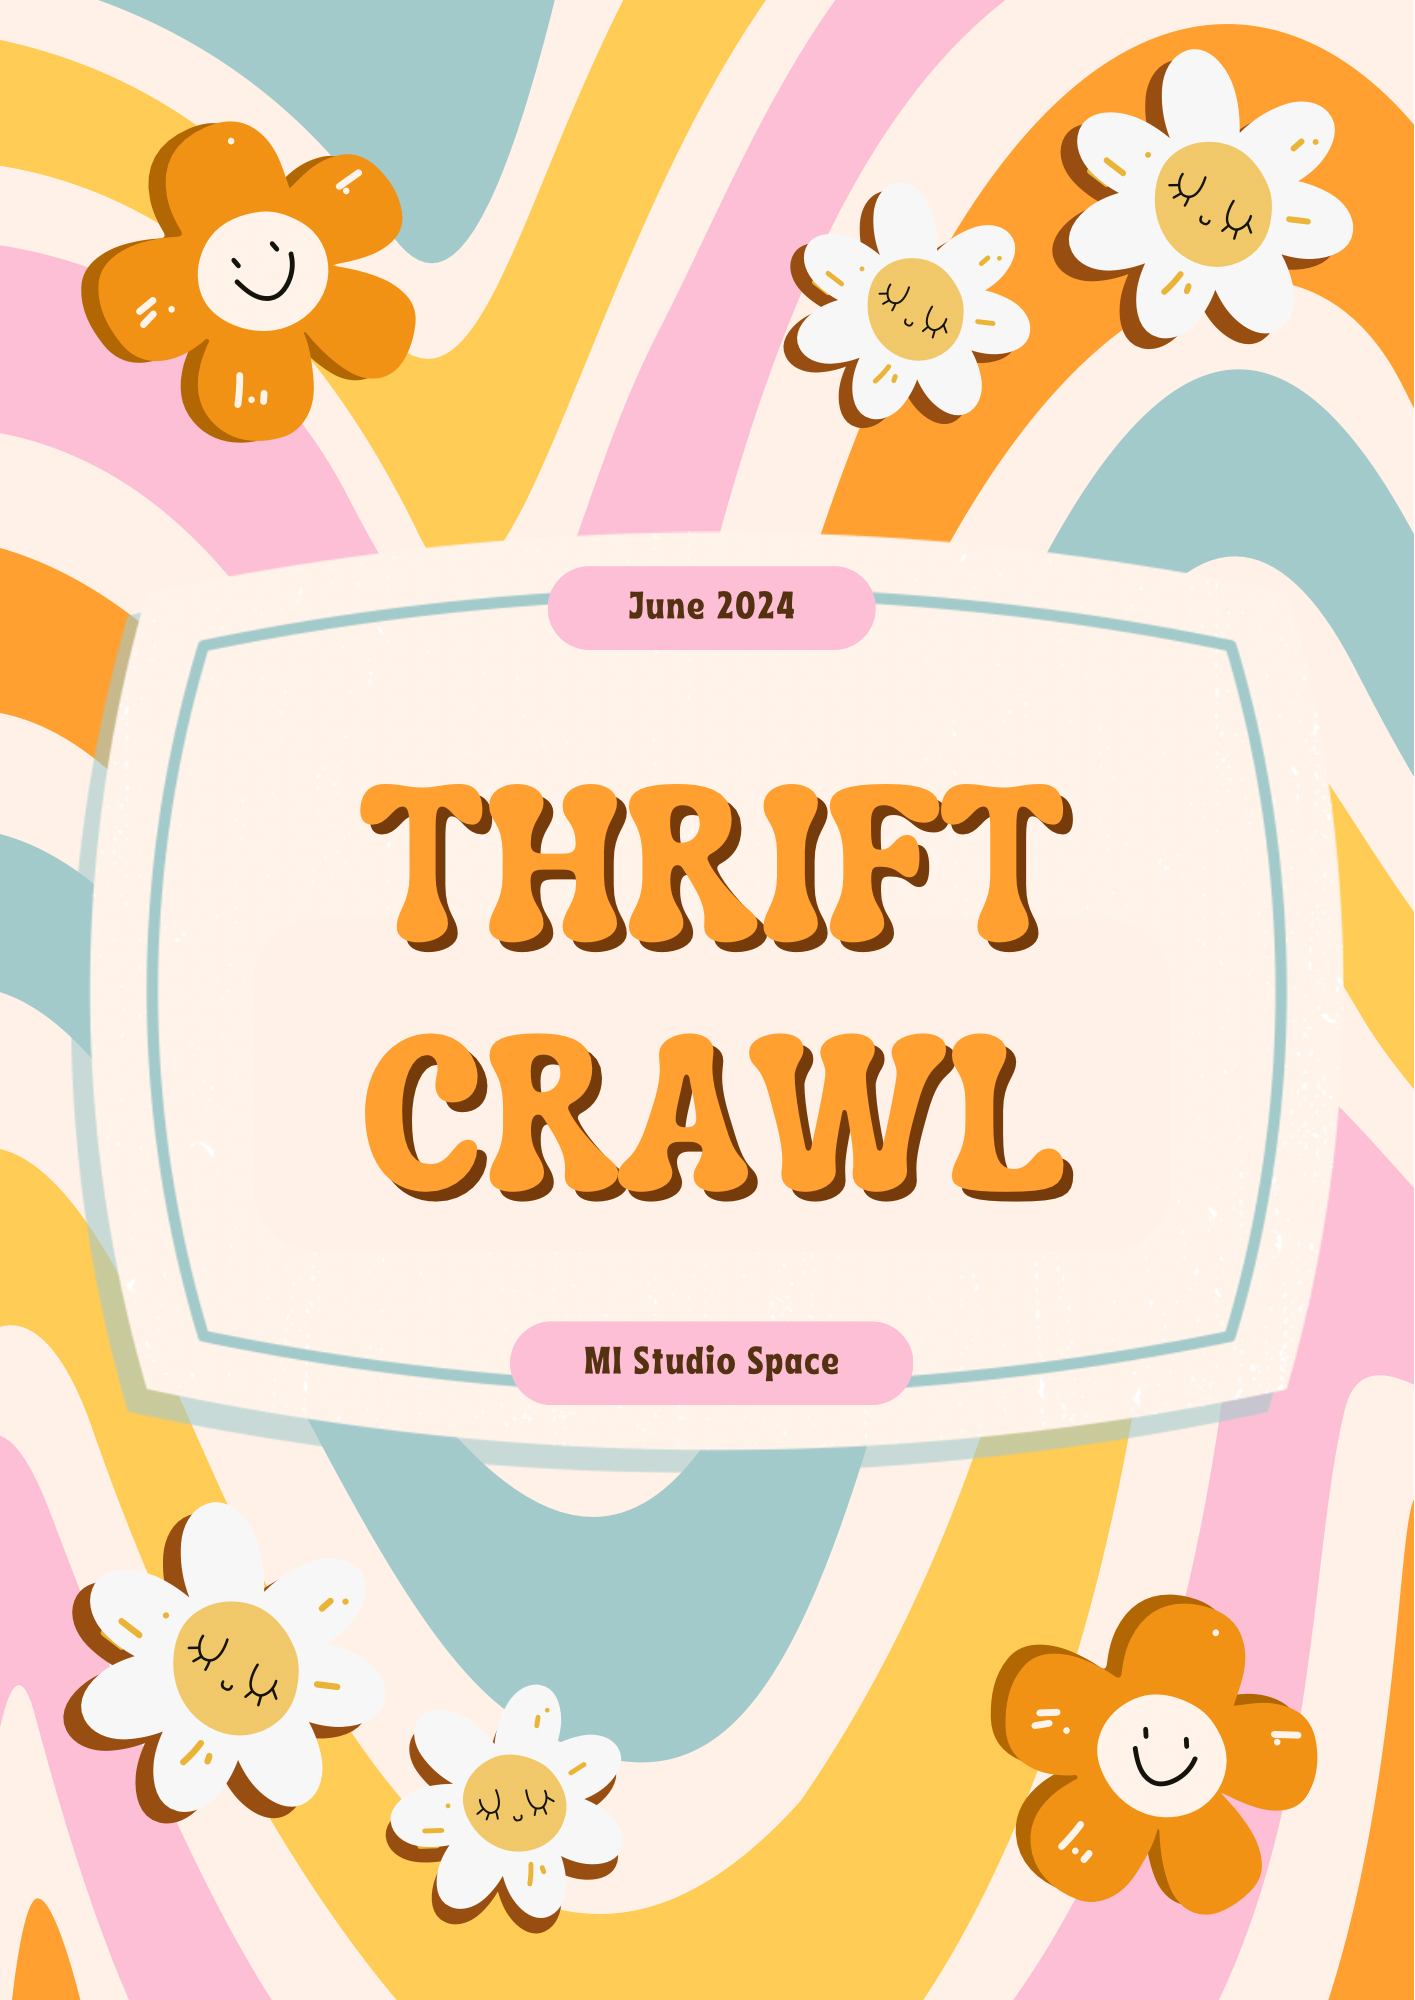 Thrift Crawl Event for Creatives www.mistudiospace.com